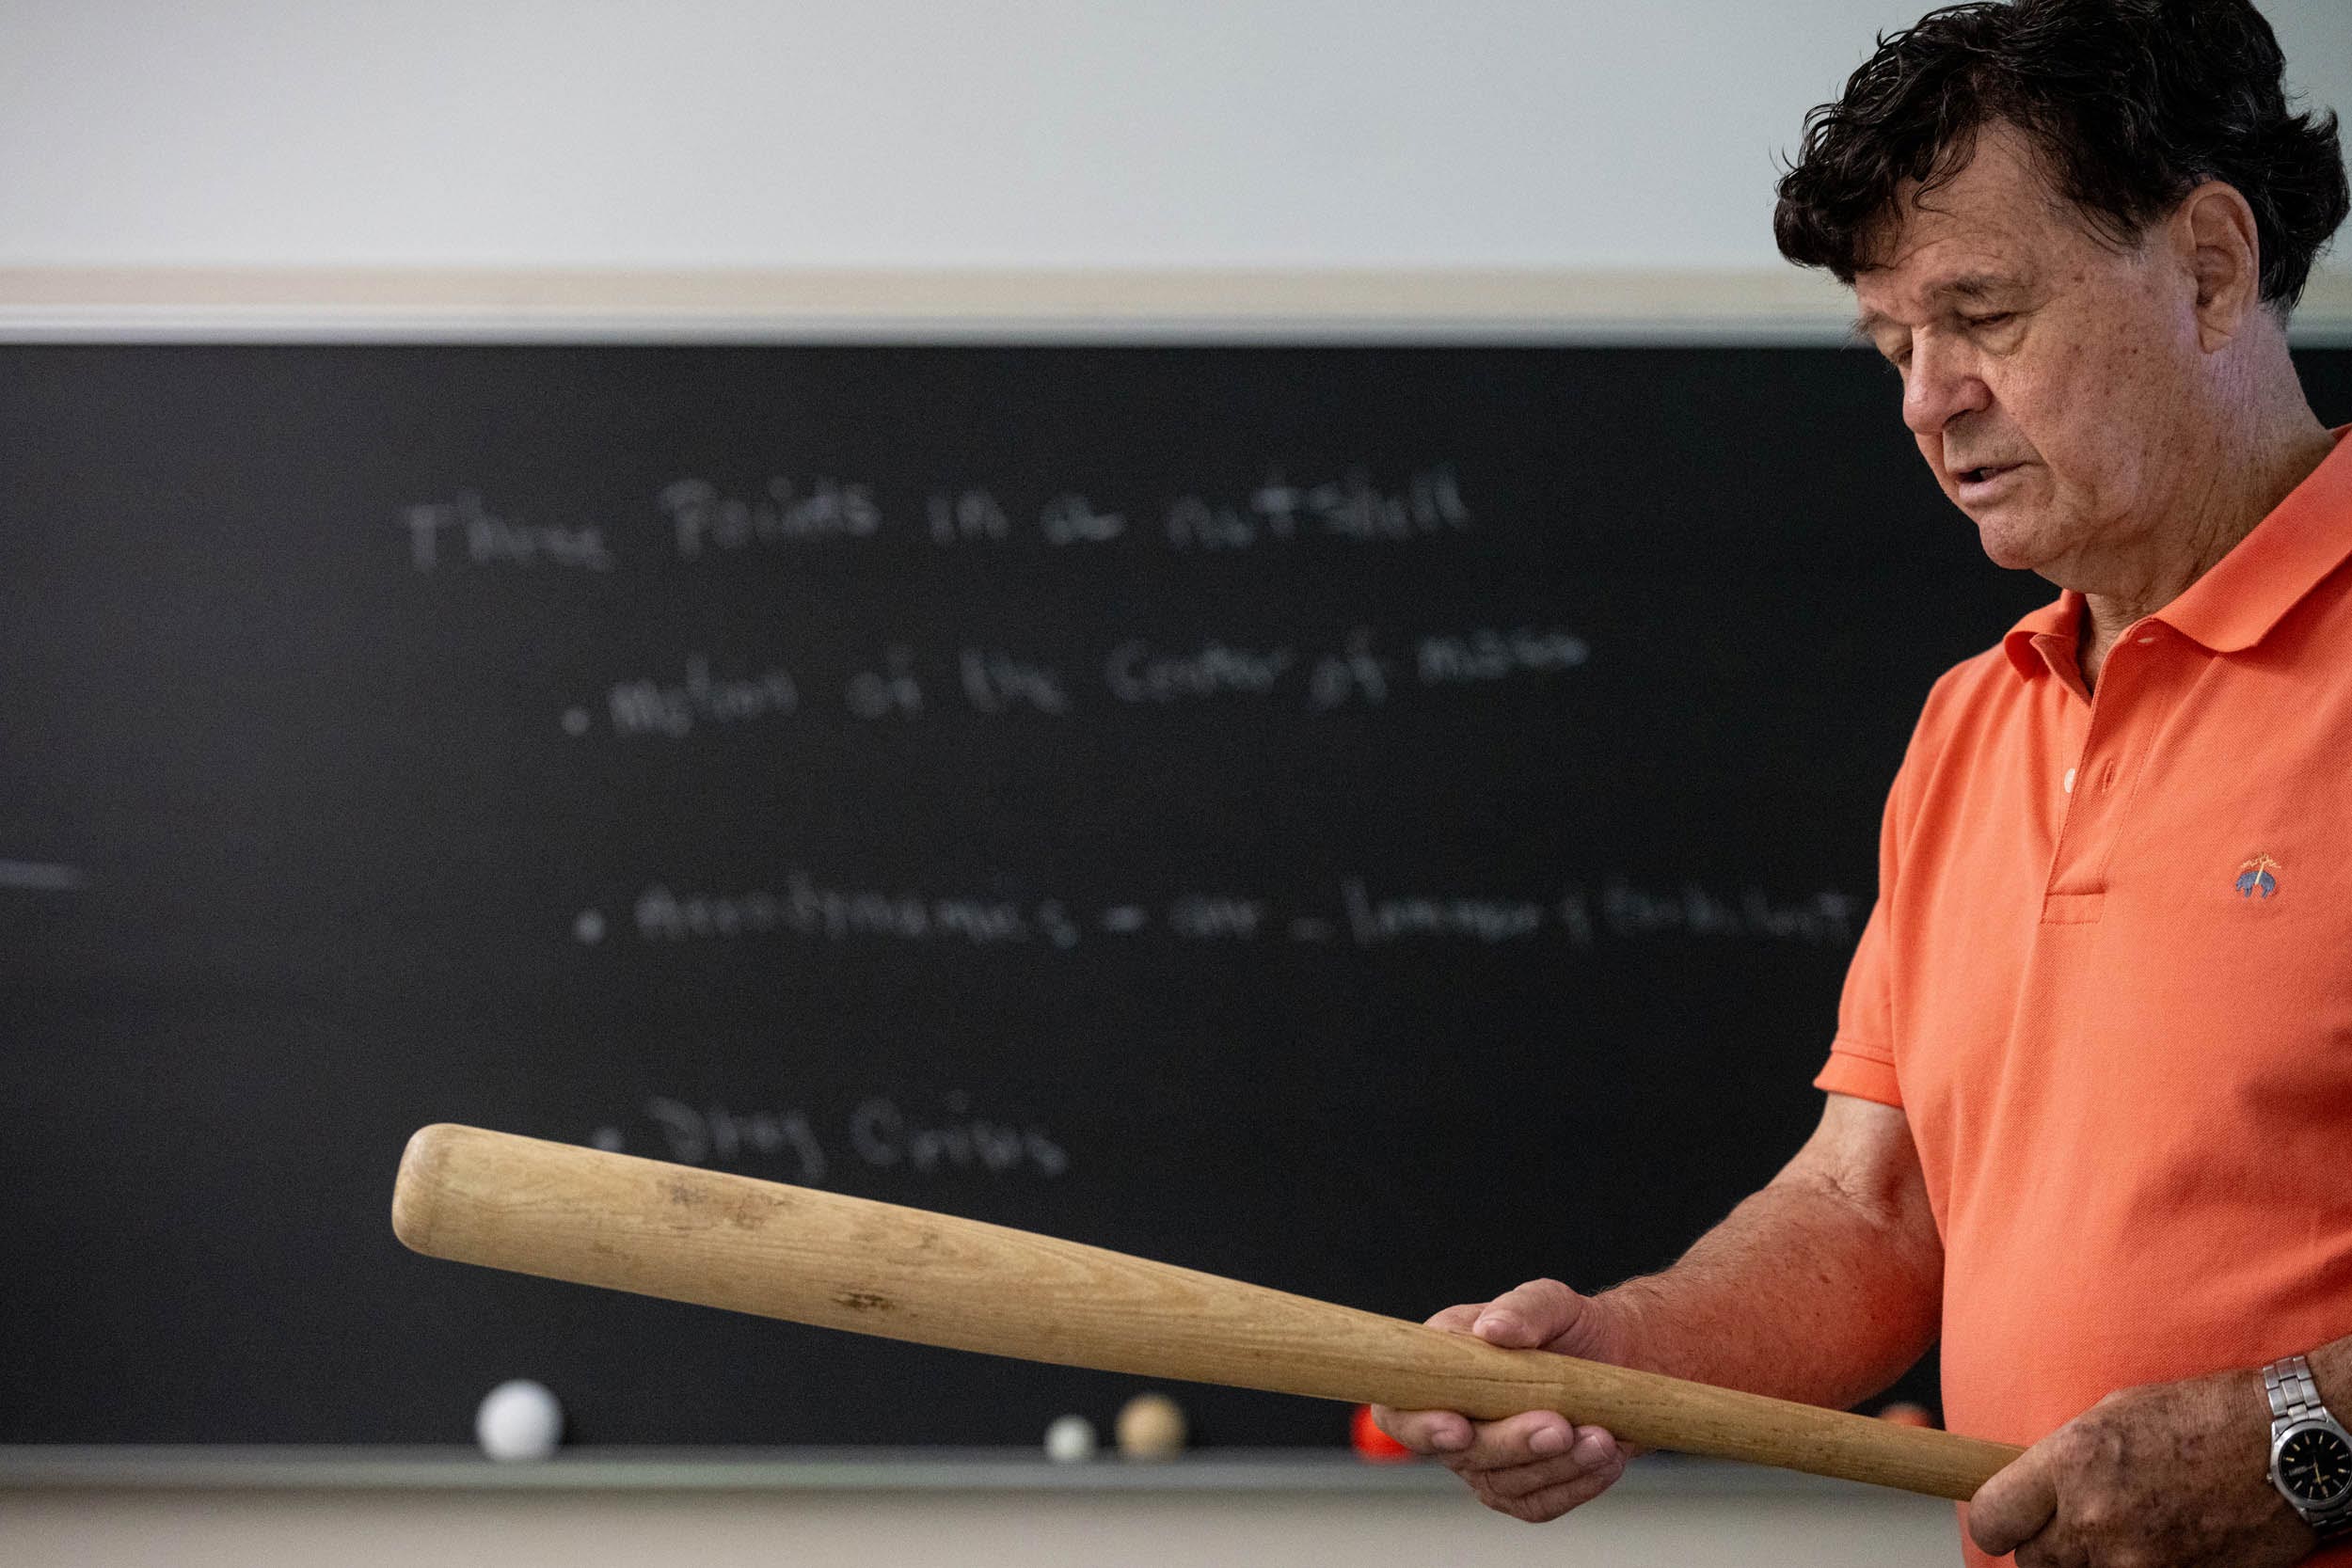 Professor holds baseball bat